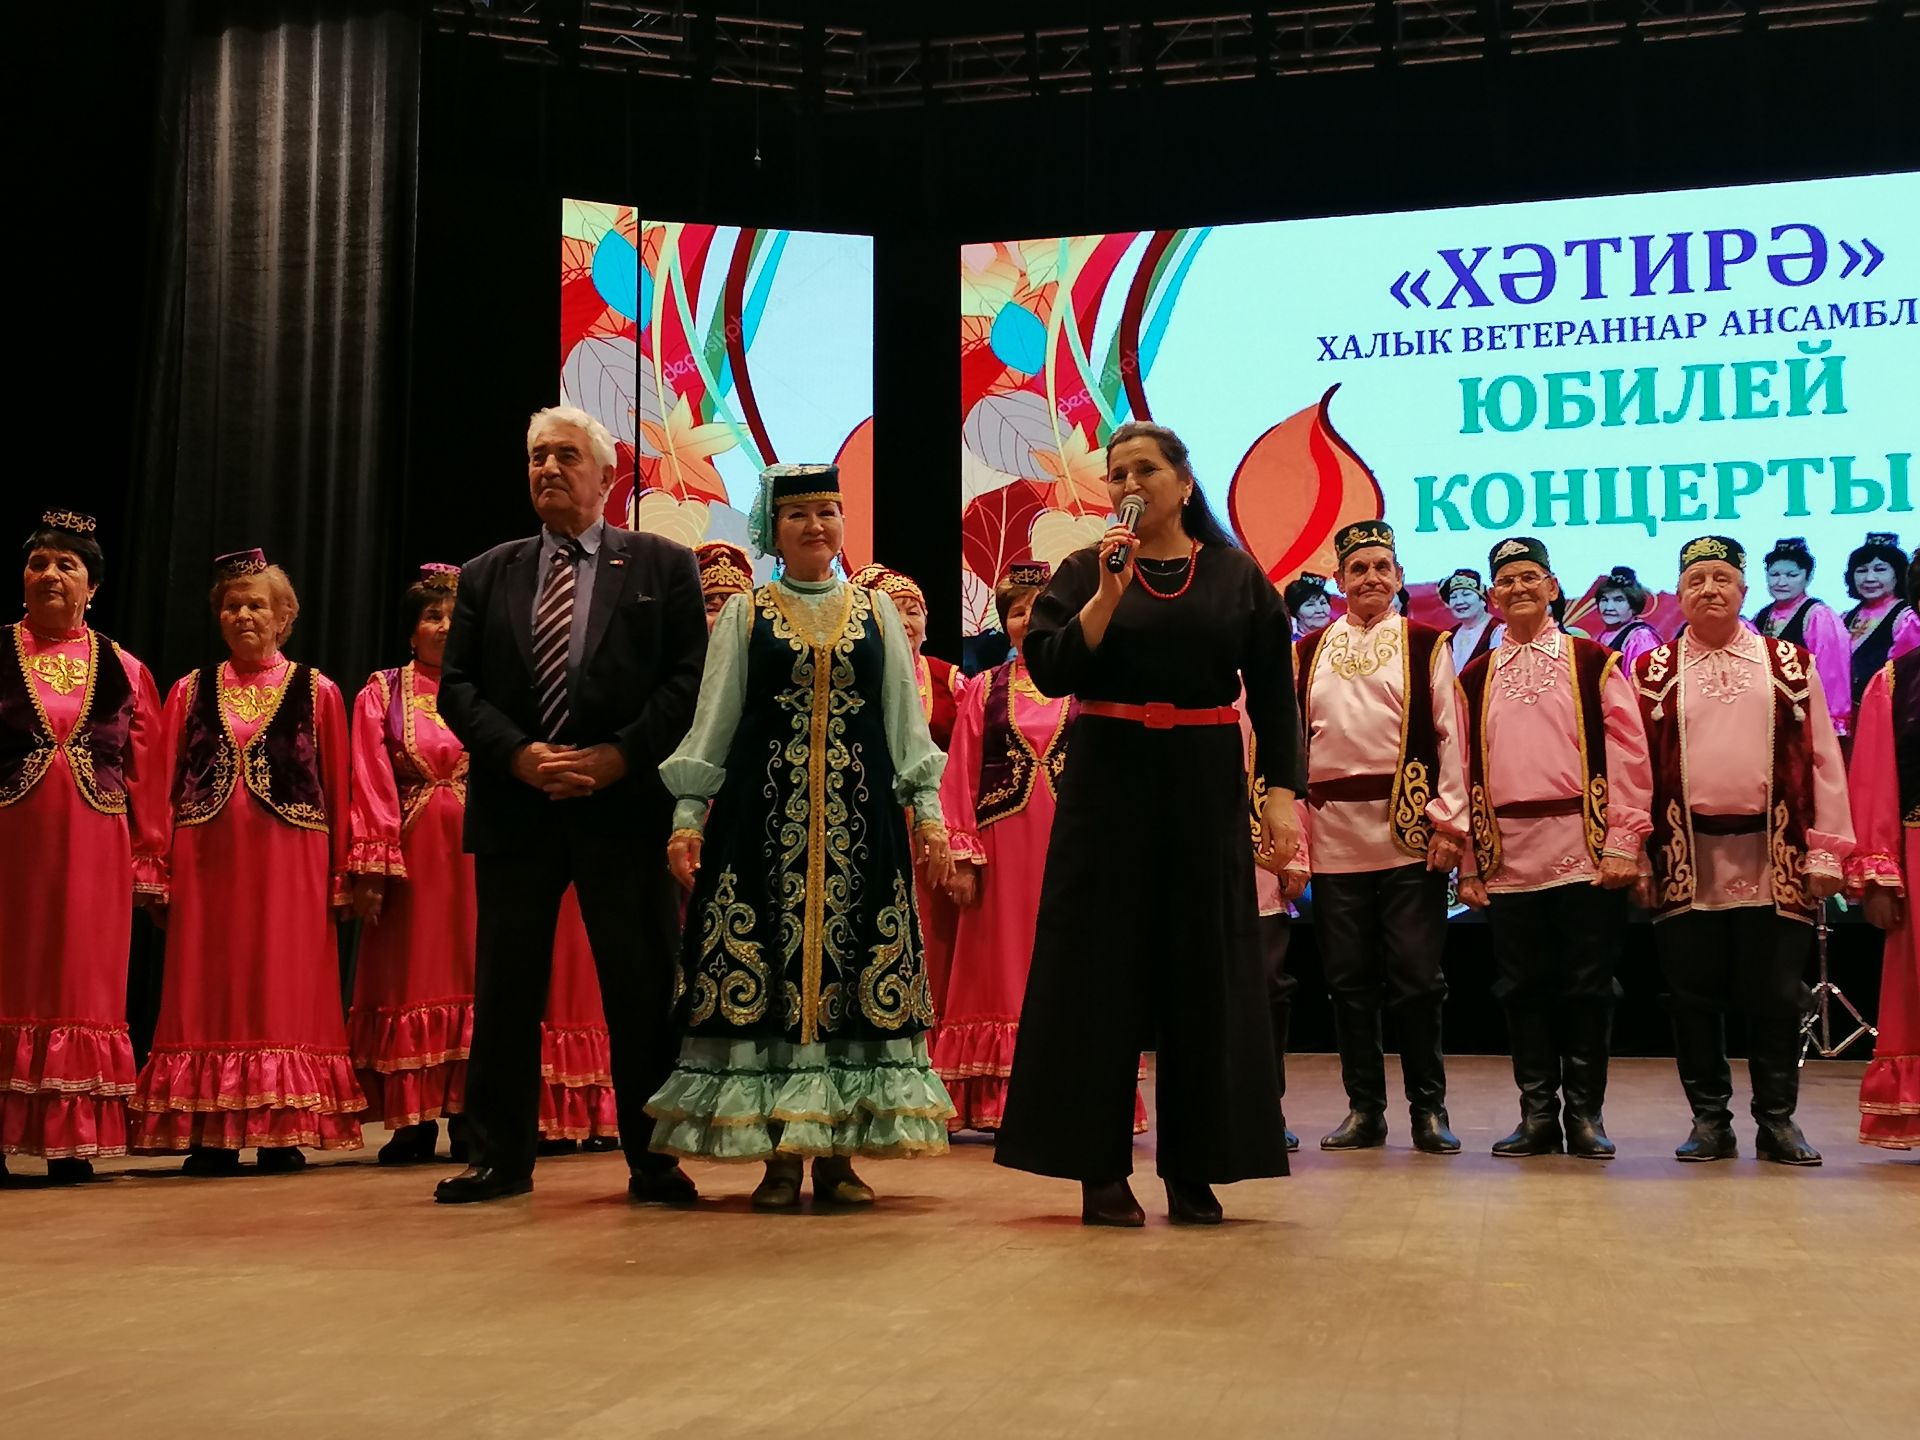 Азнакаевский народный ансамбль ветеранов “Хатира” отметил юбилей